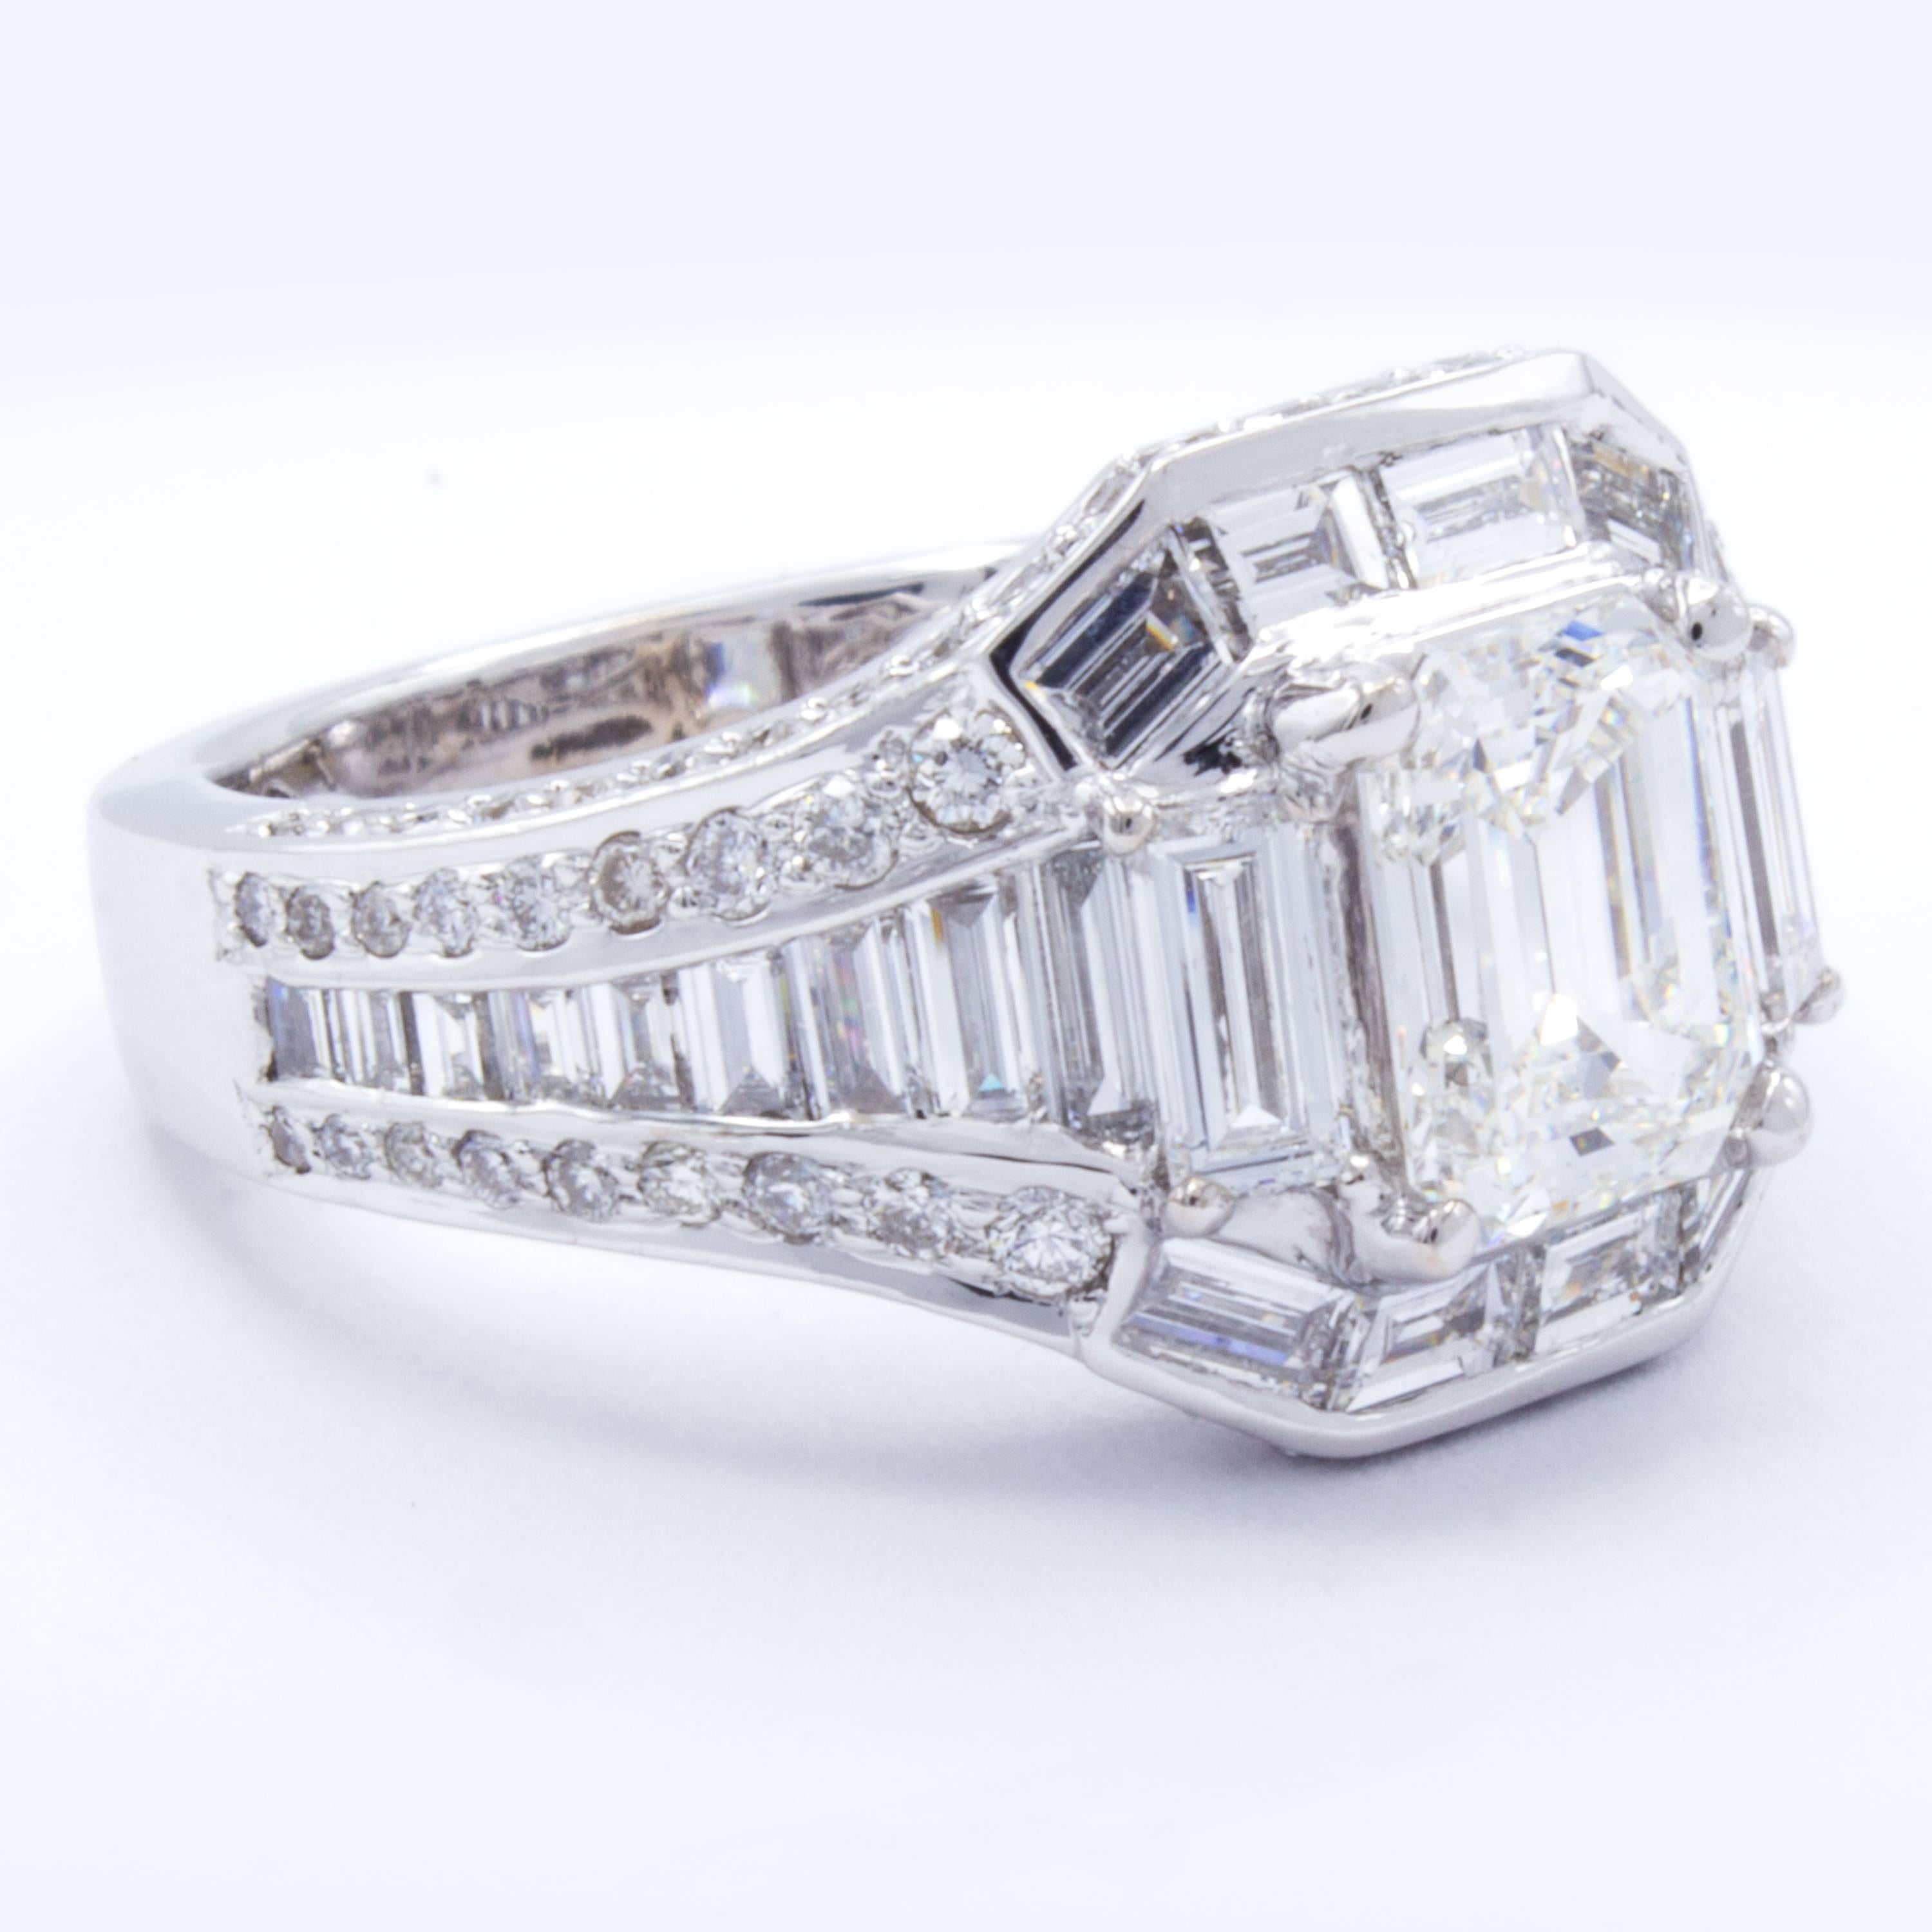 David Rosenberg 1.08 Carat Emerald GIA 18 Karat Gold Diamond Engagement Ring 1